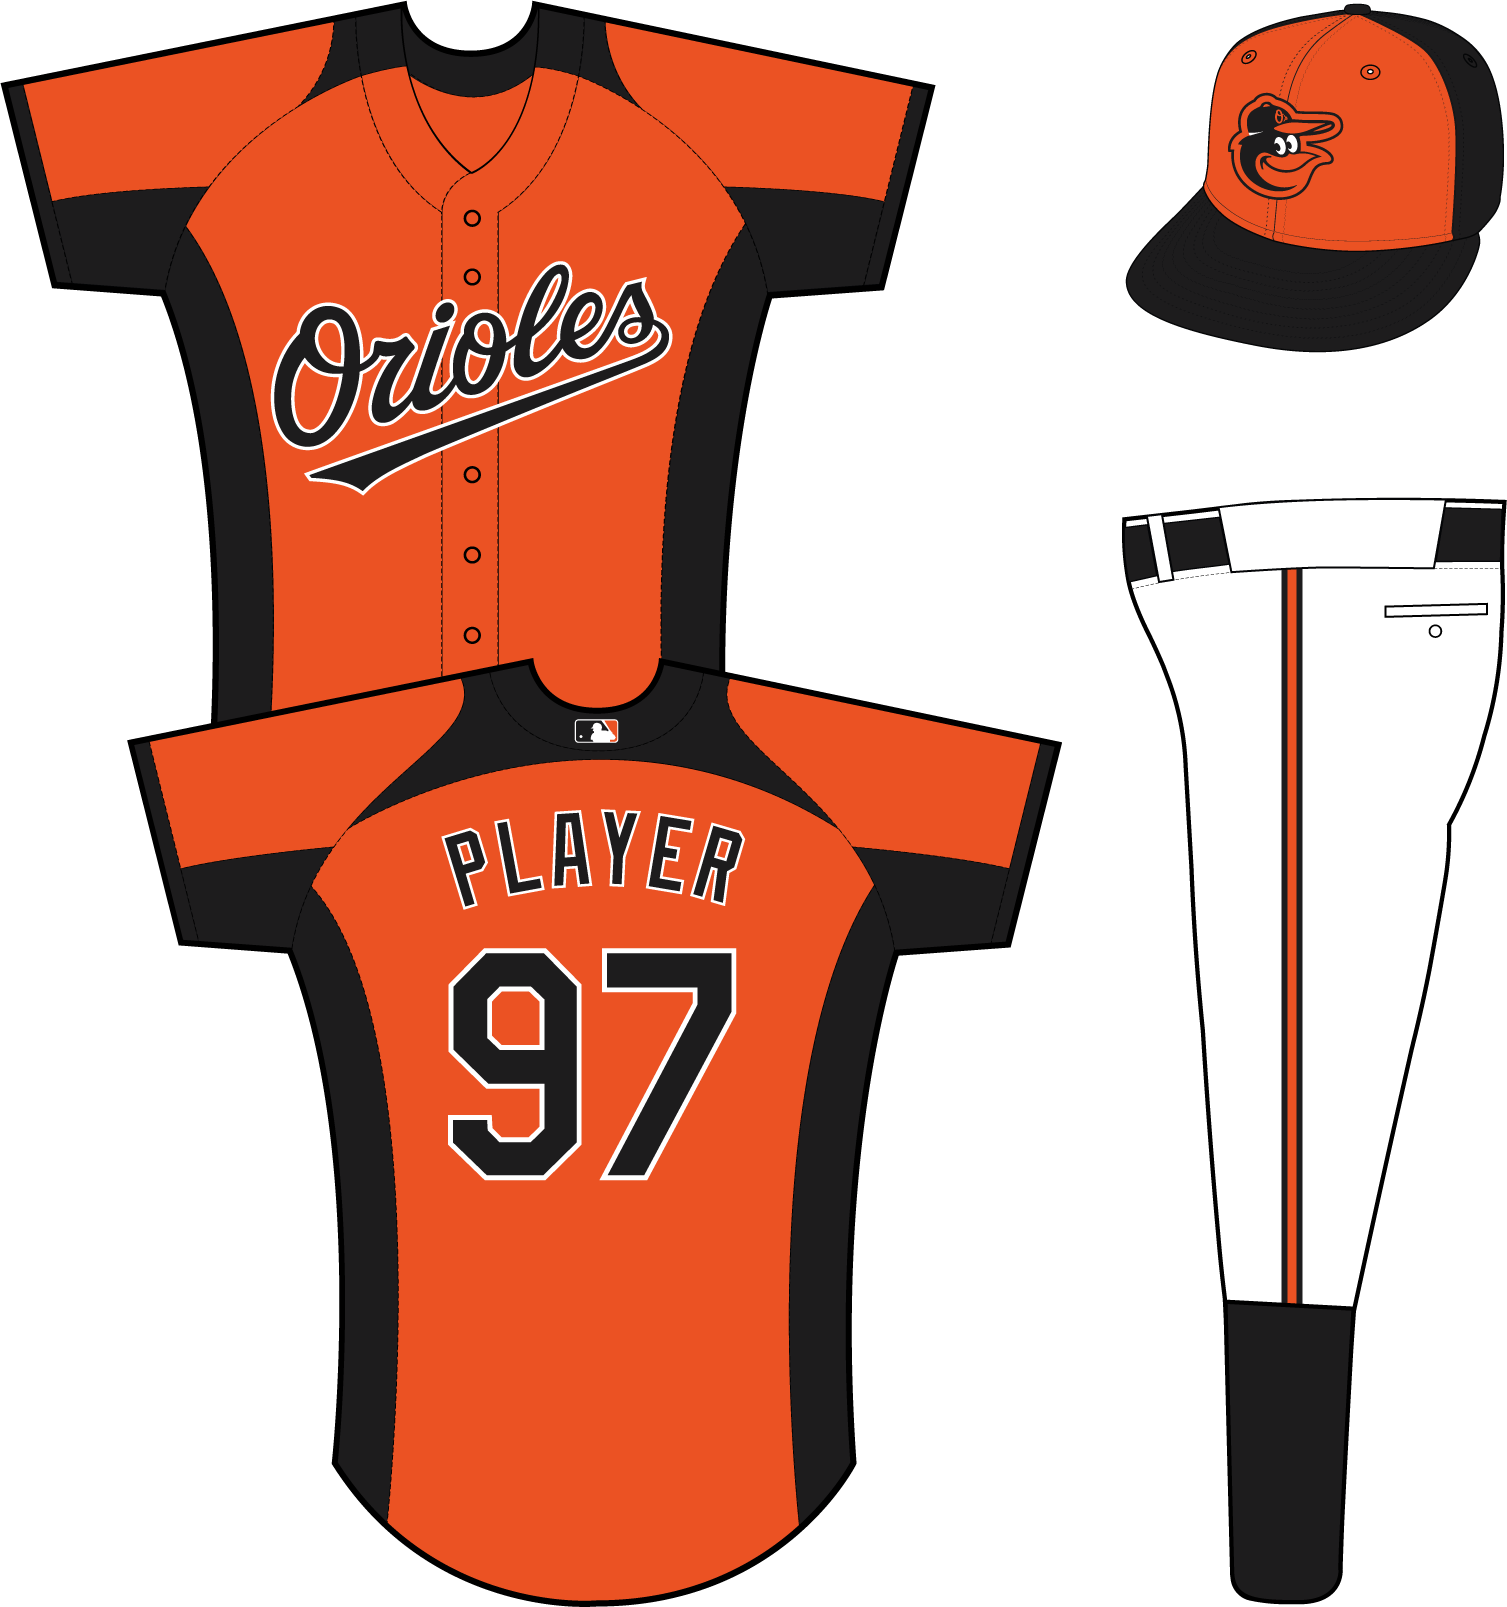 Baltimore Orioles Practice Uniform - Uniformes De Los Orioles De Baltimore (1507x1607)